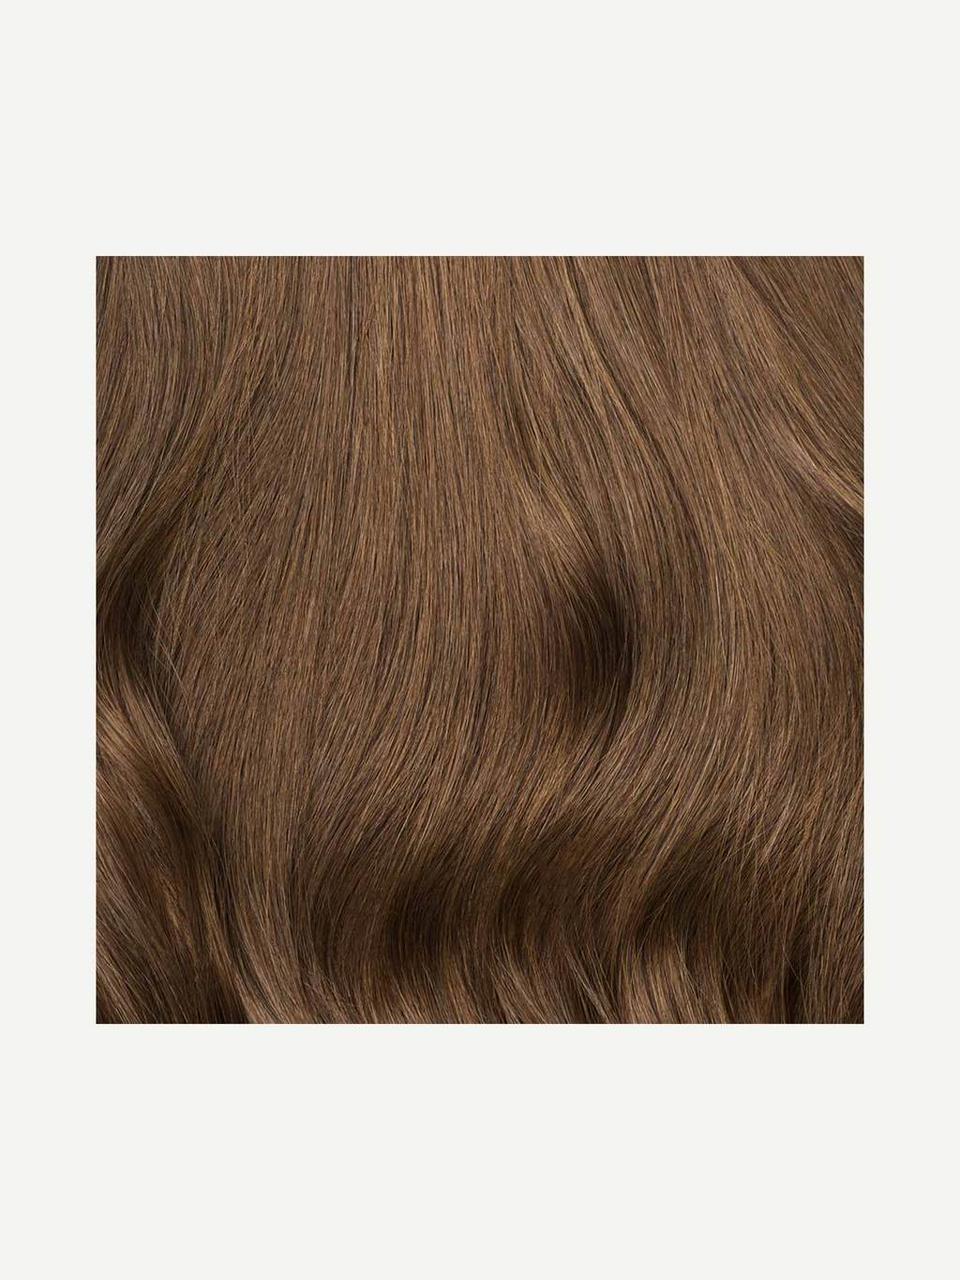 Волосся для нарощування Luxy натуральне Hair Chestnut Brown 6 110 грамм (в пакете)